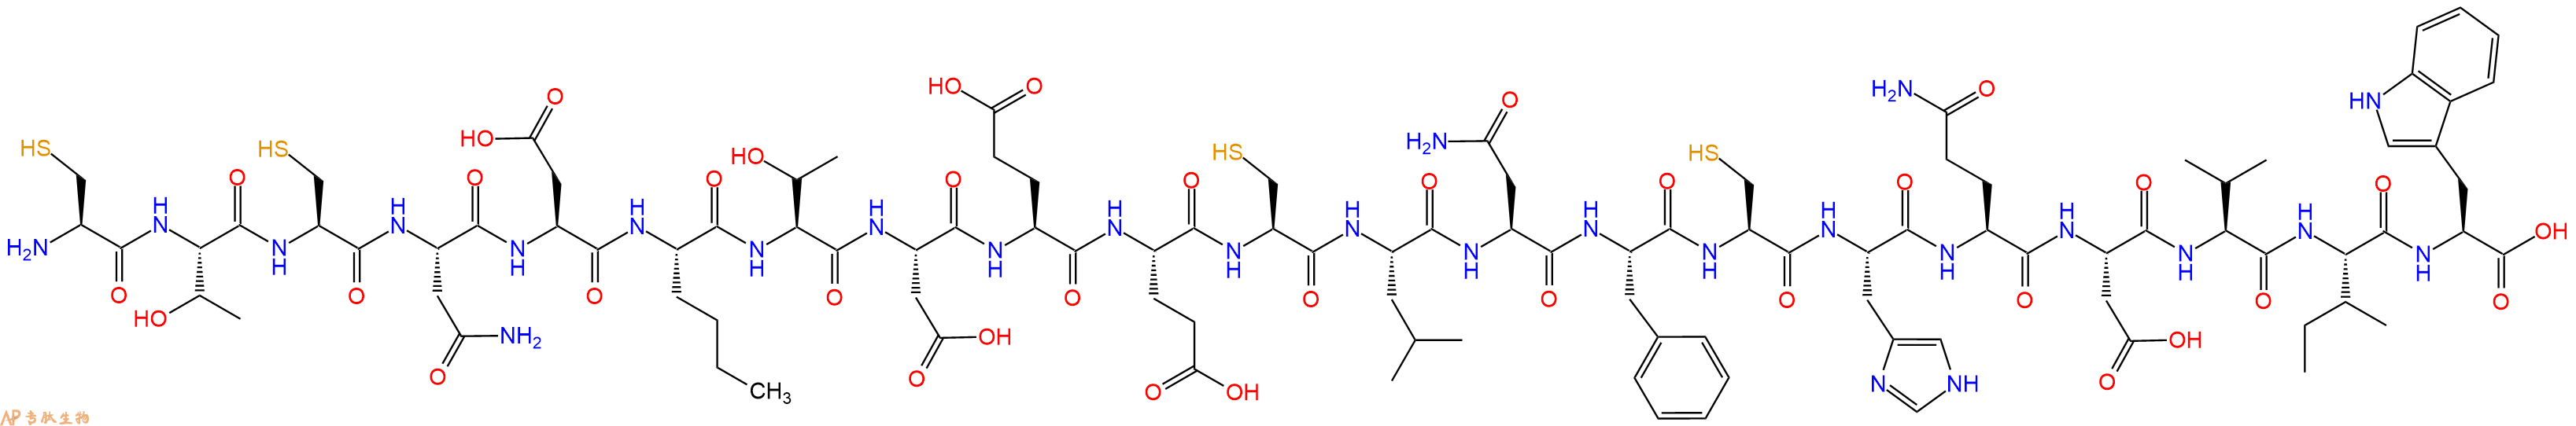 专肽生物产品角蝰毒素(Nle6)-Sarafotoxin C352283-69-3